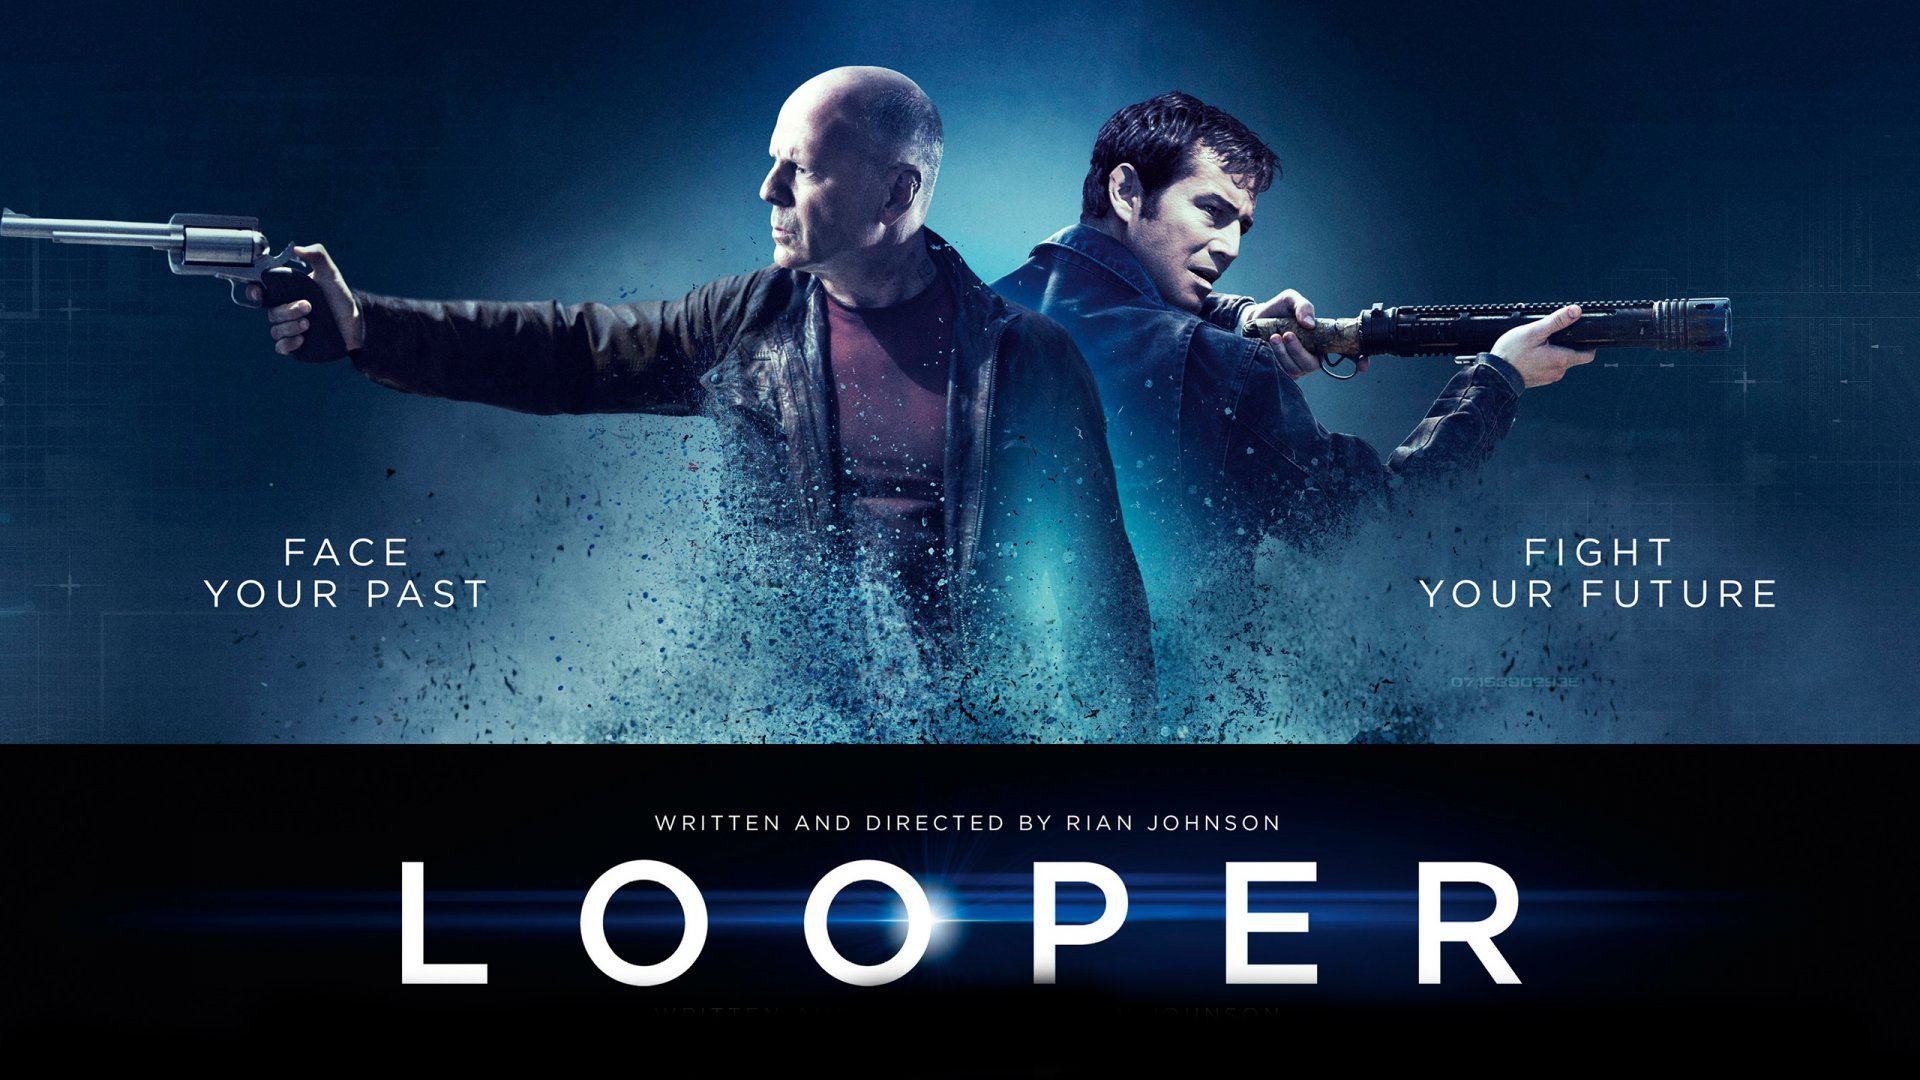 "Looper" sẽ mang đến cho khán giả những giây phút căng thẳng và suy nghĩ sâu sắc